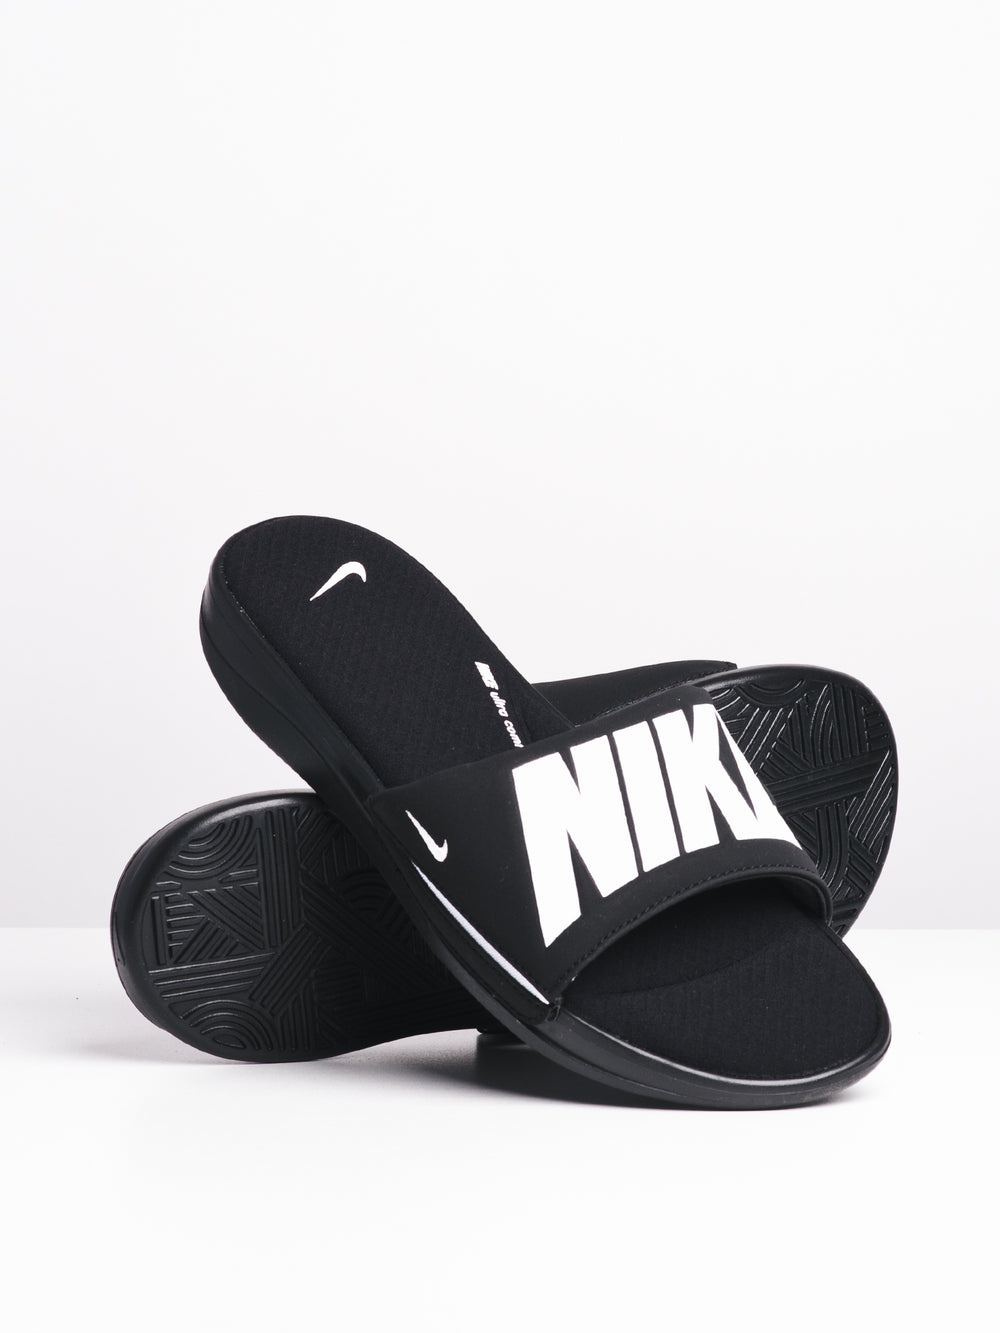 men's ultra comfort slide sandal